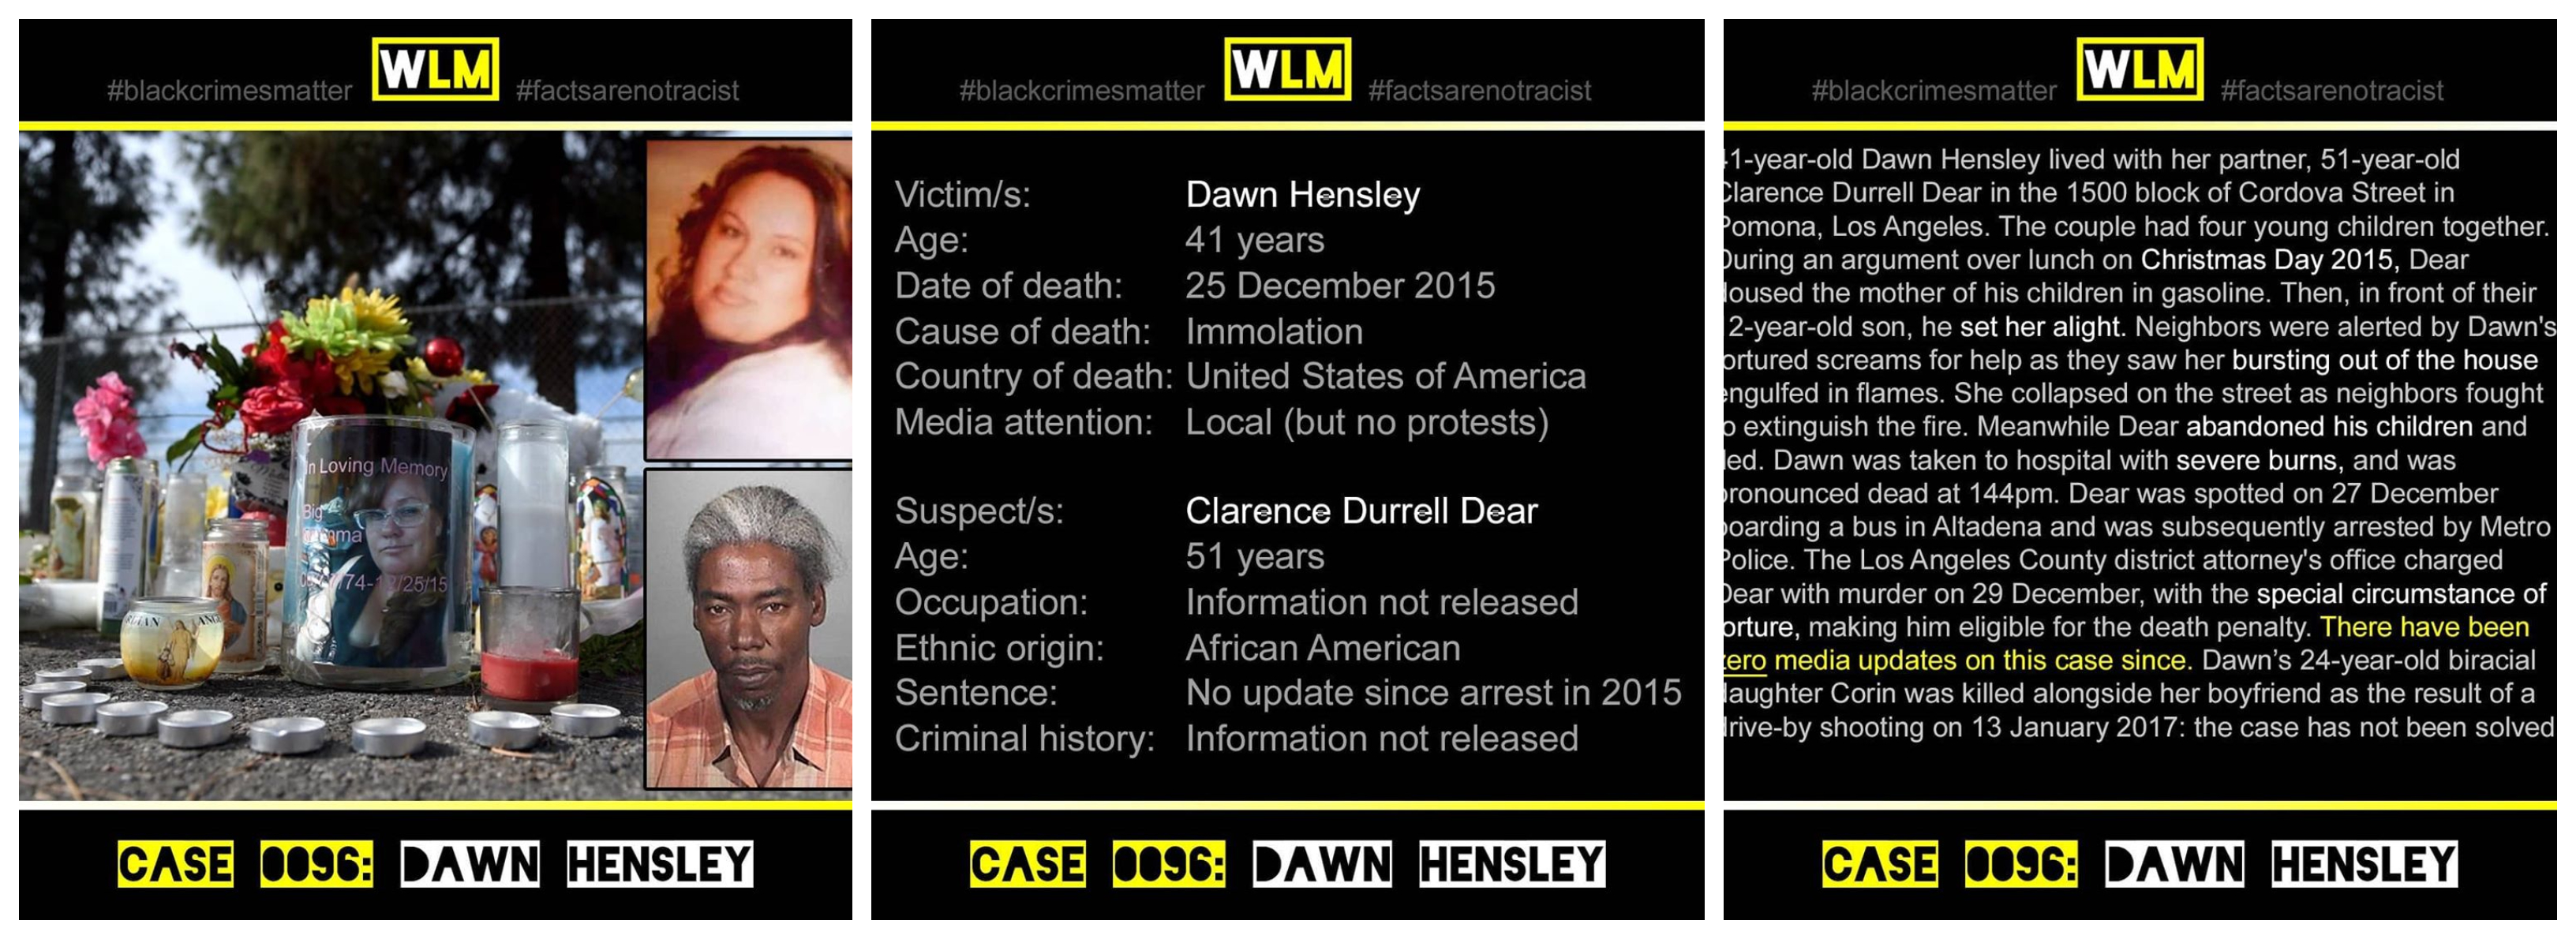 case-096-dawn-hensley